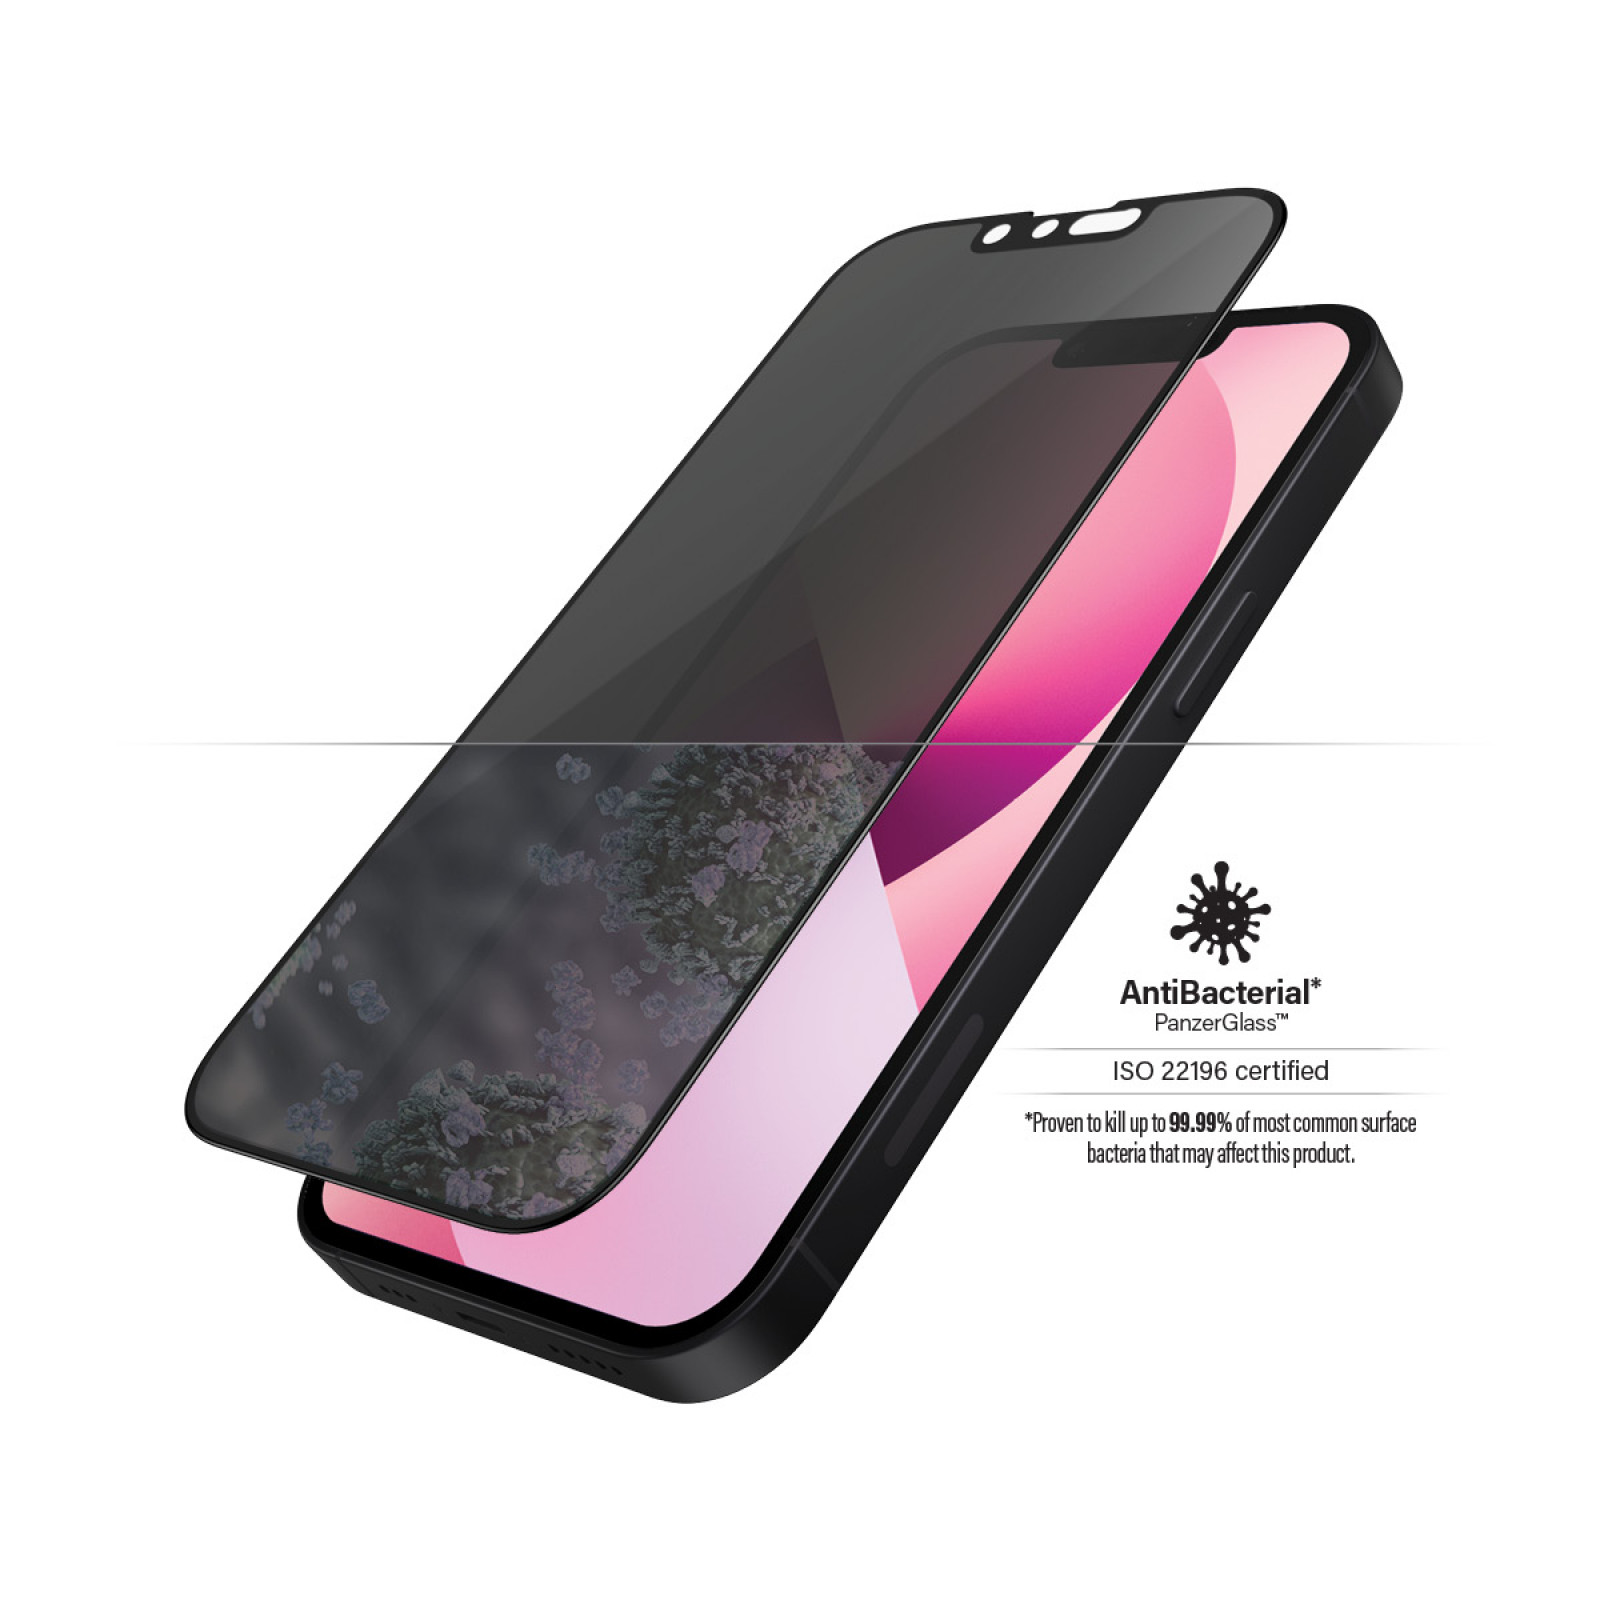 Стъклен протектор PanzerGlass за Apple Iphone 13 mini, Privacy, CaseFriendly, Antibacterial - Черен